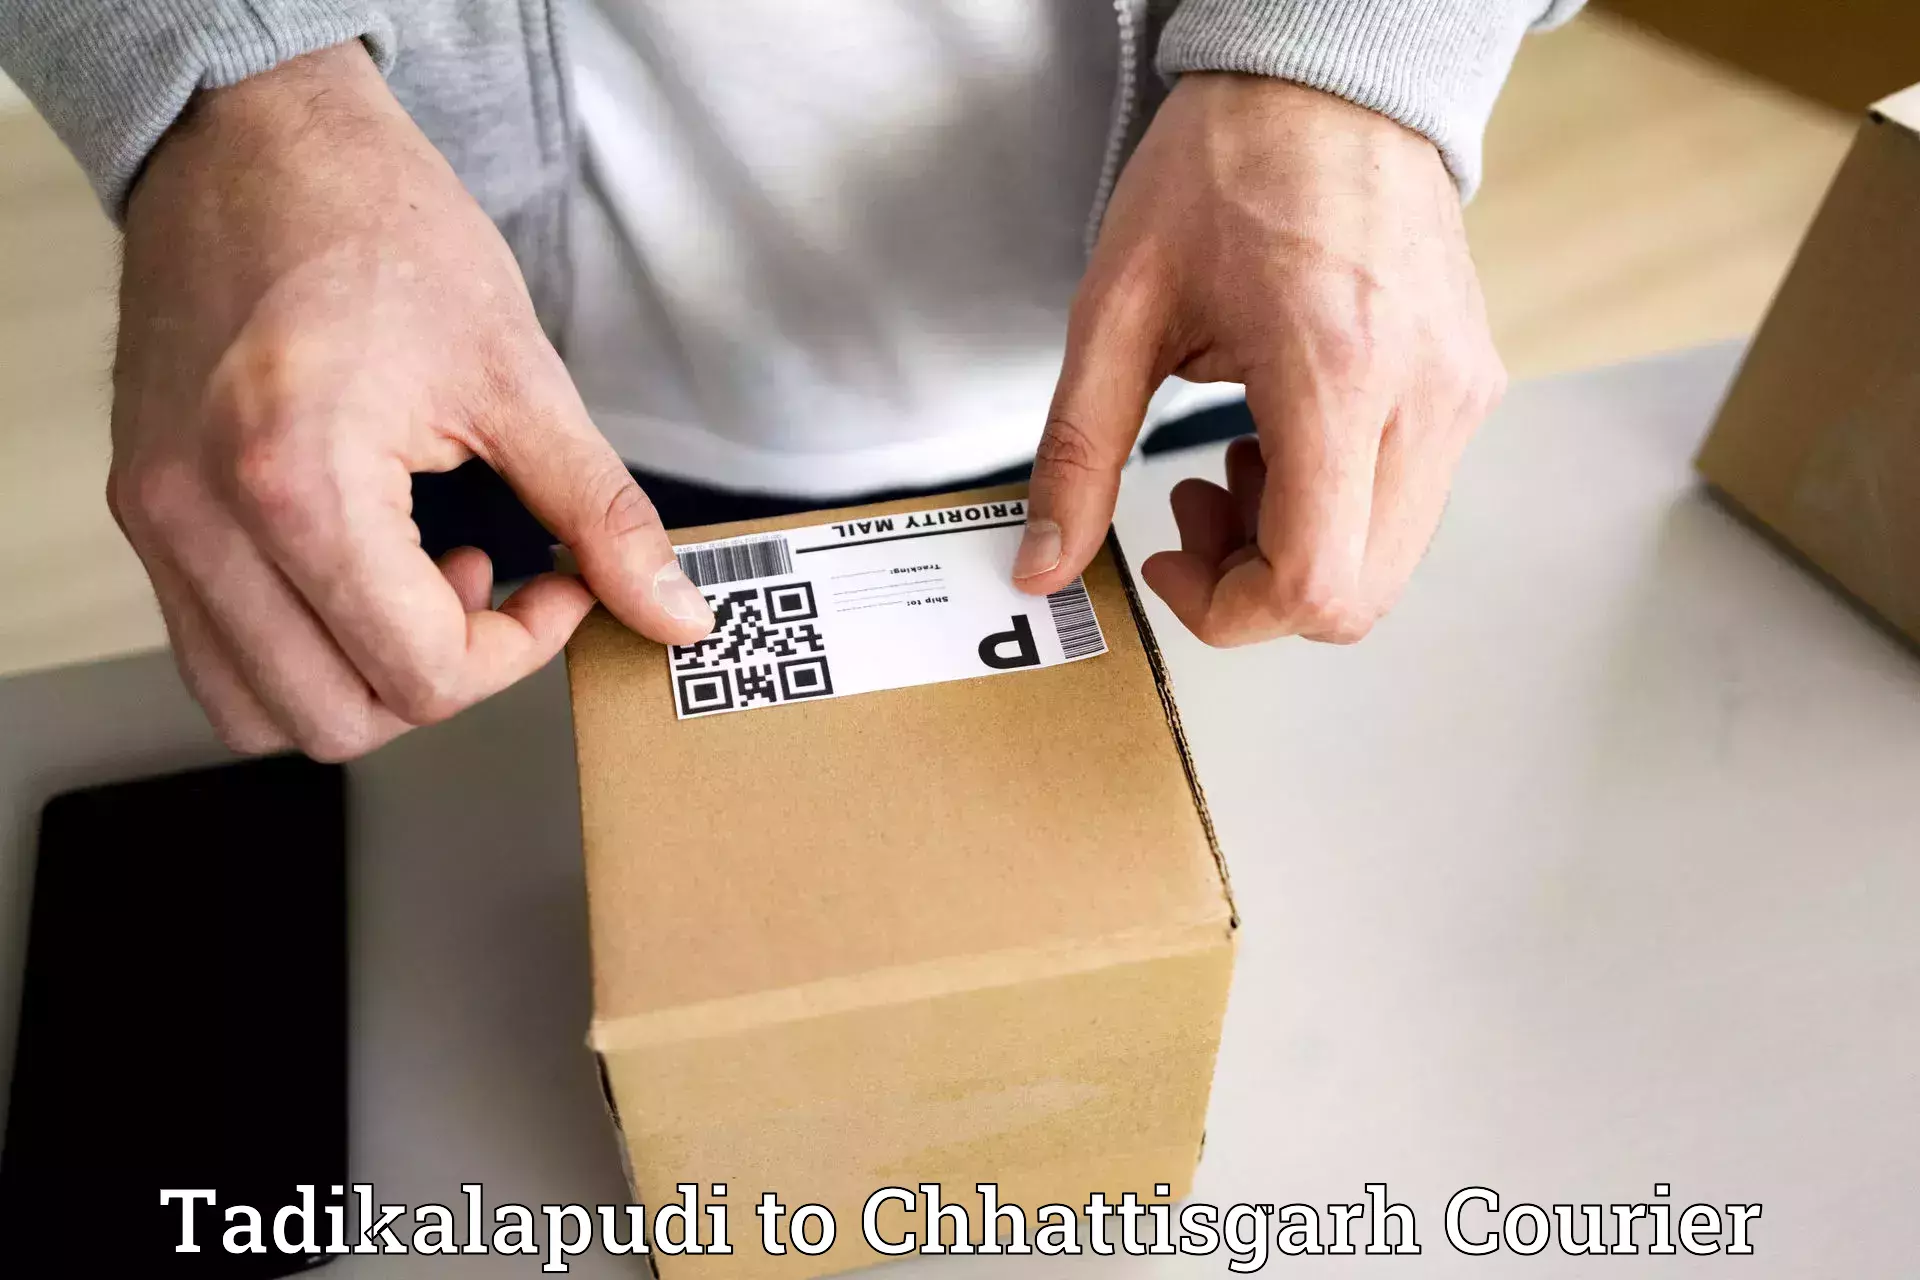 Efficient cargo handling Tadikalapudi to Chhattisgarh